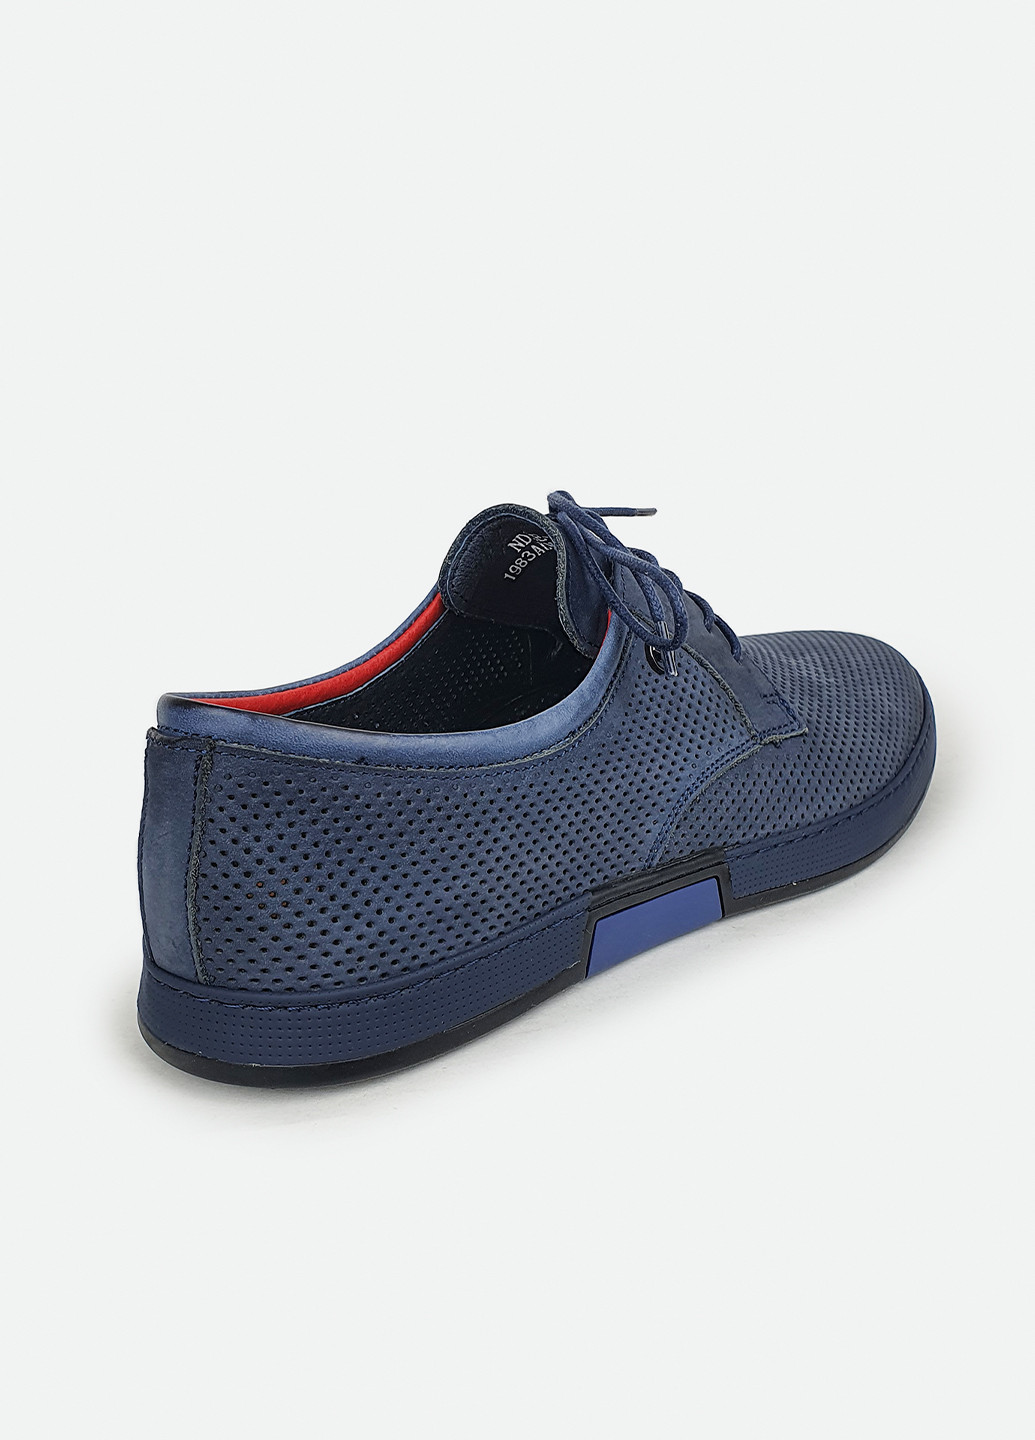 Синие удобные мужские туфли в дырочку кожаные темно-синие на шнурках 44 Cosottinni